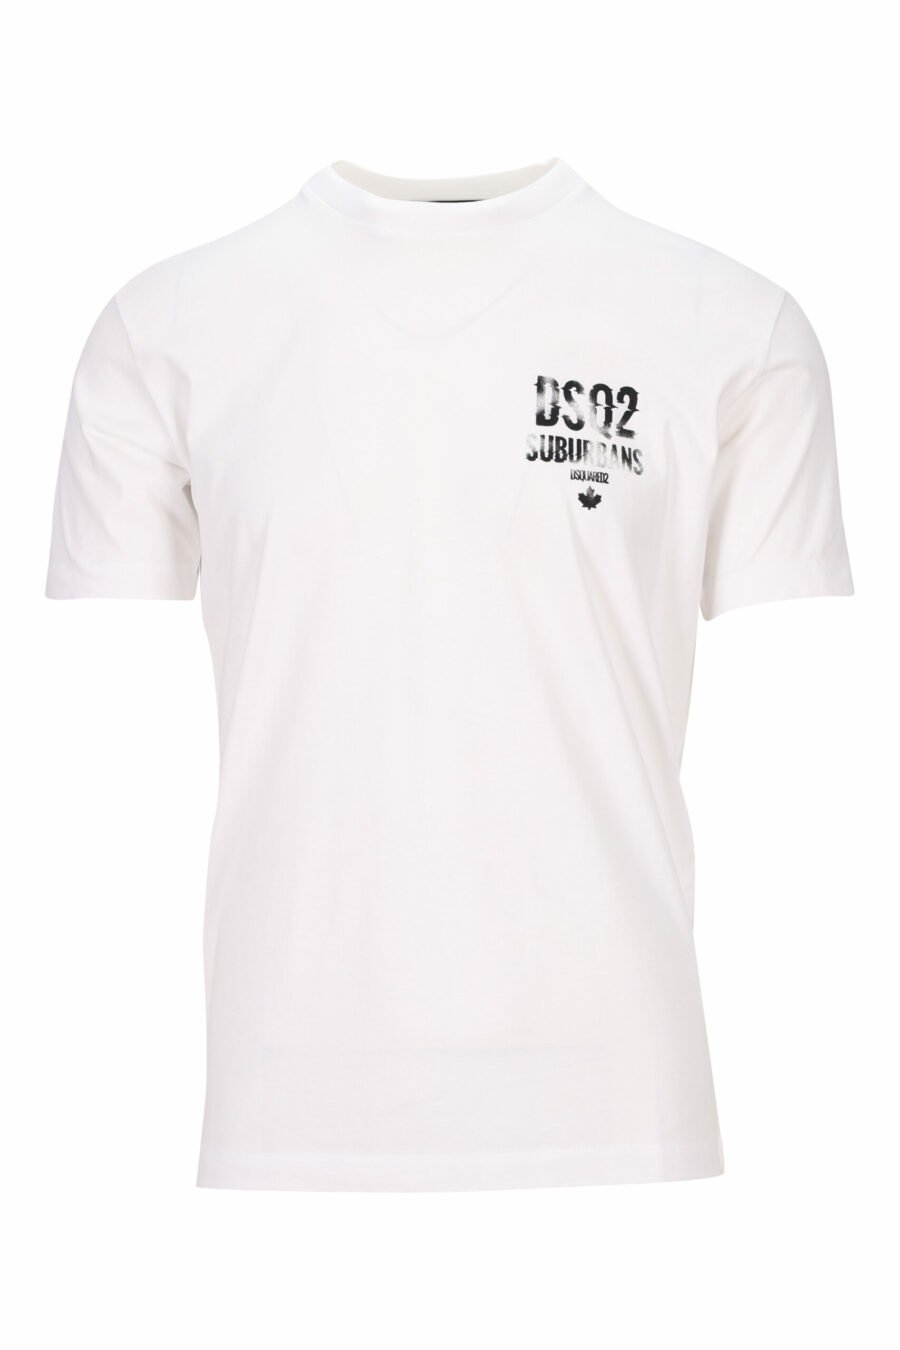 Weißes T-Shirt mit schwarzem "suburbans"-Mini-Logo - 8054148512842 skaliert